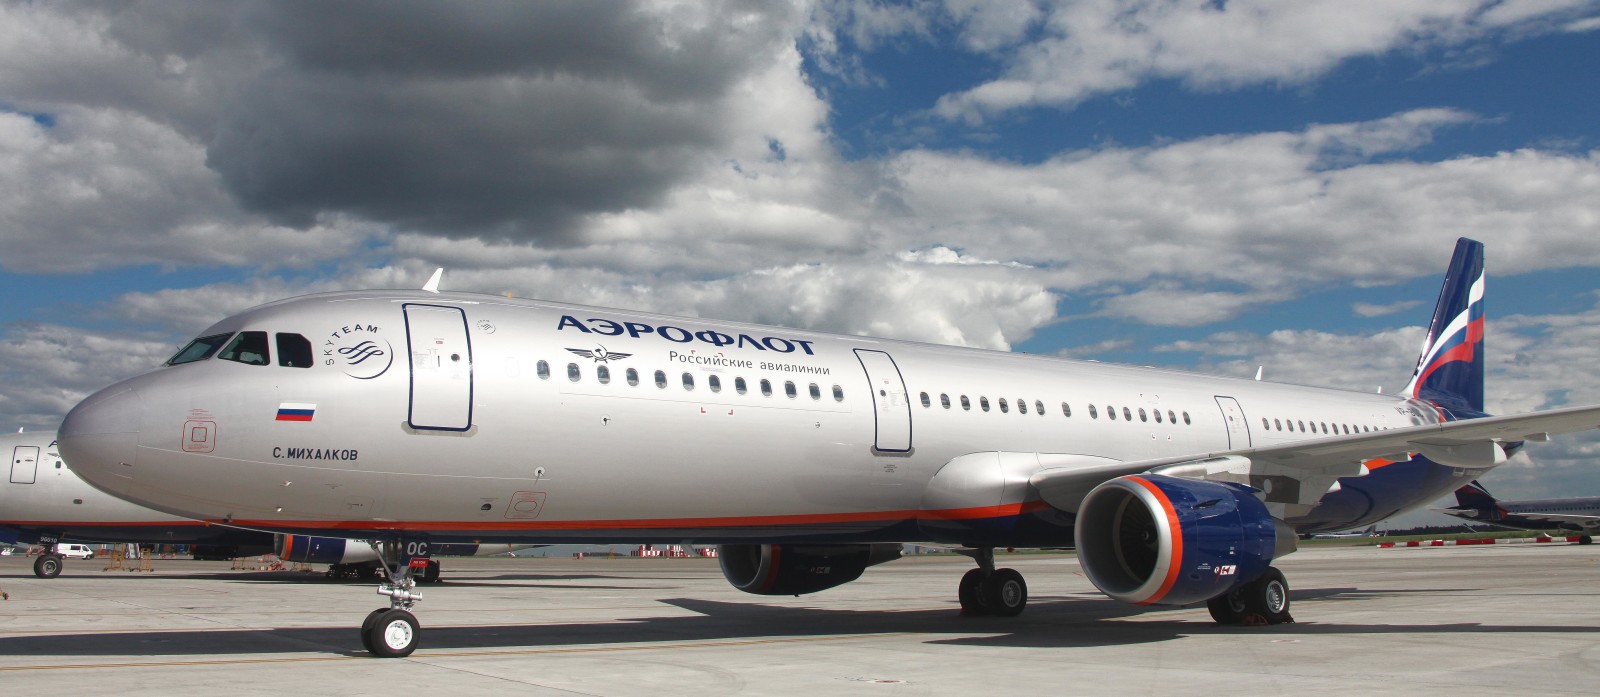 ท้องฟ้า, เมฆ, เครื่องบิน, Aeroflot, แอร์บัส, A-321